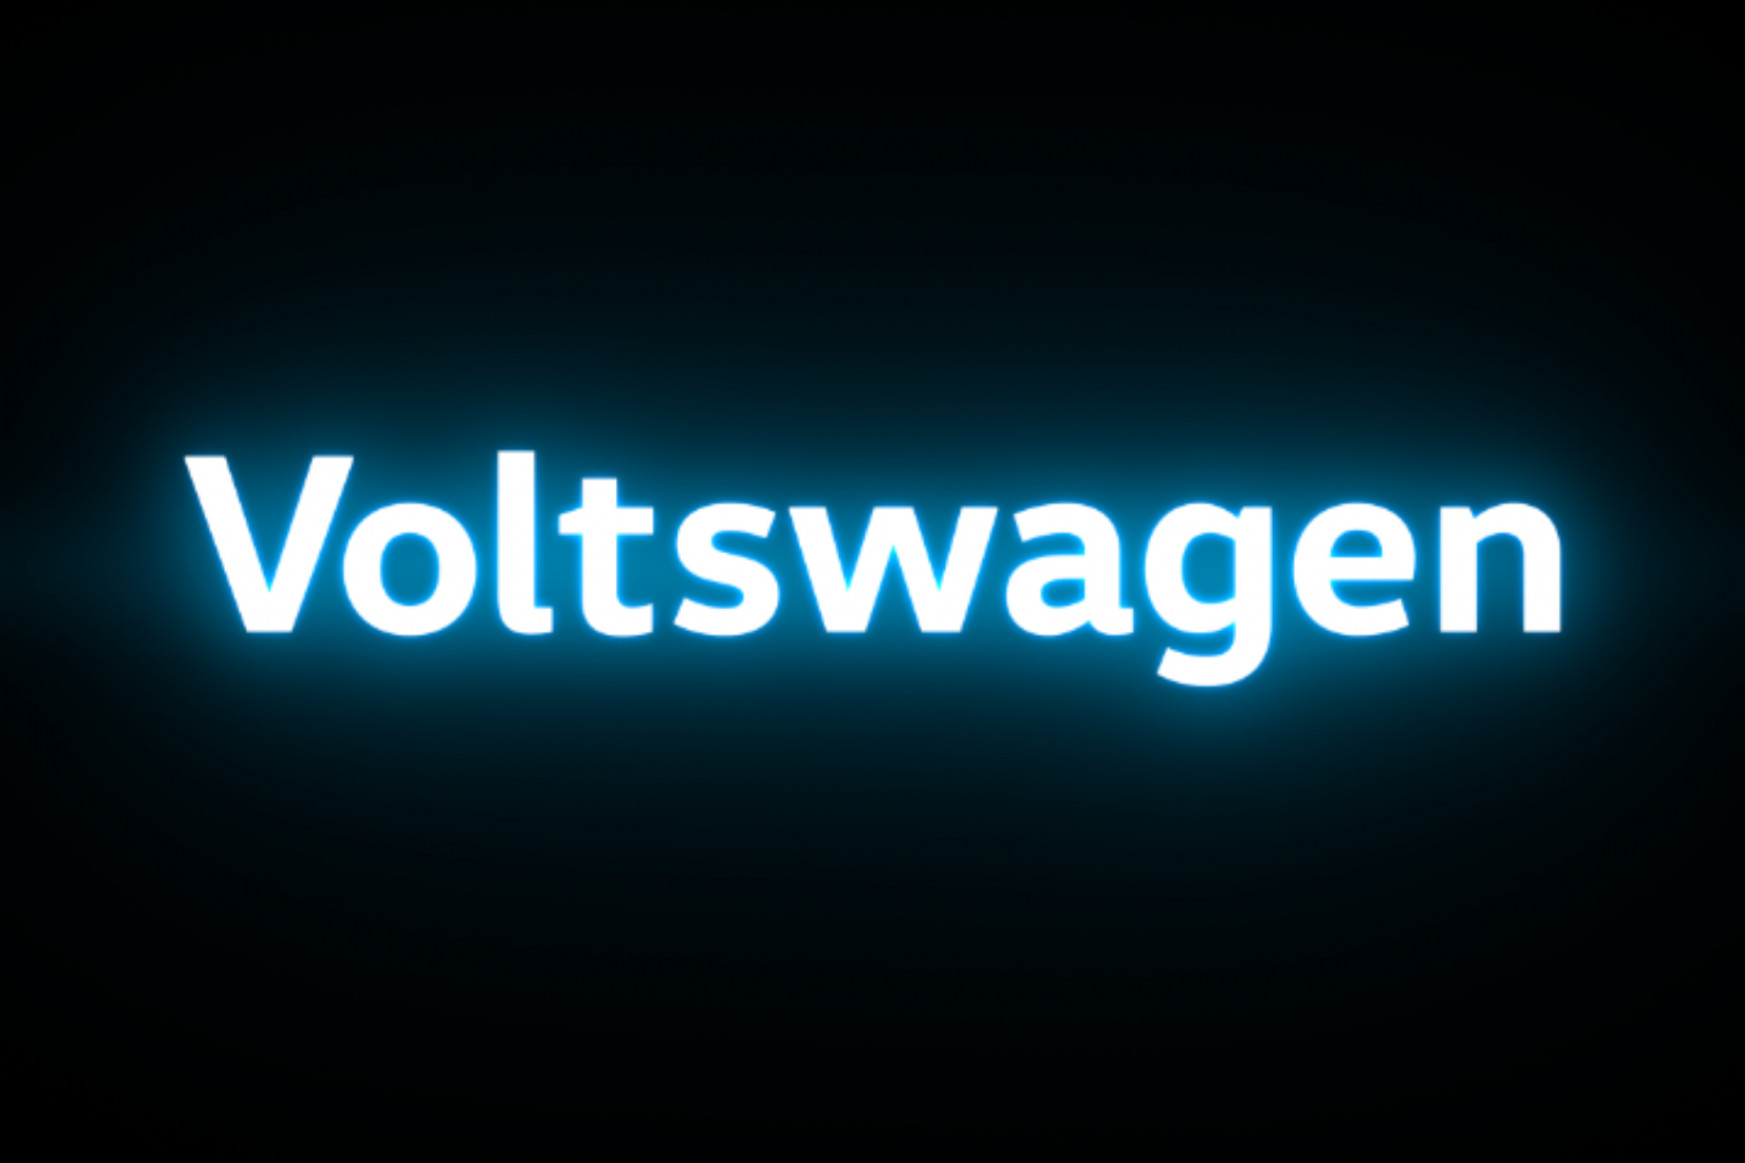 Nyomozás indult a Volkswagen ellen a félresikerült áprilisi tréfájuk miatt